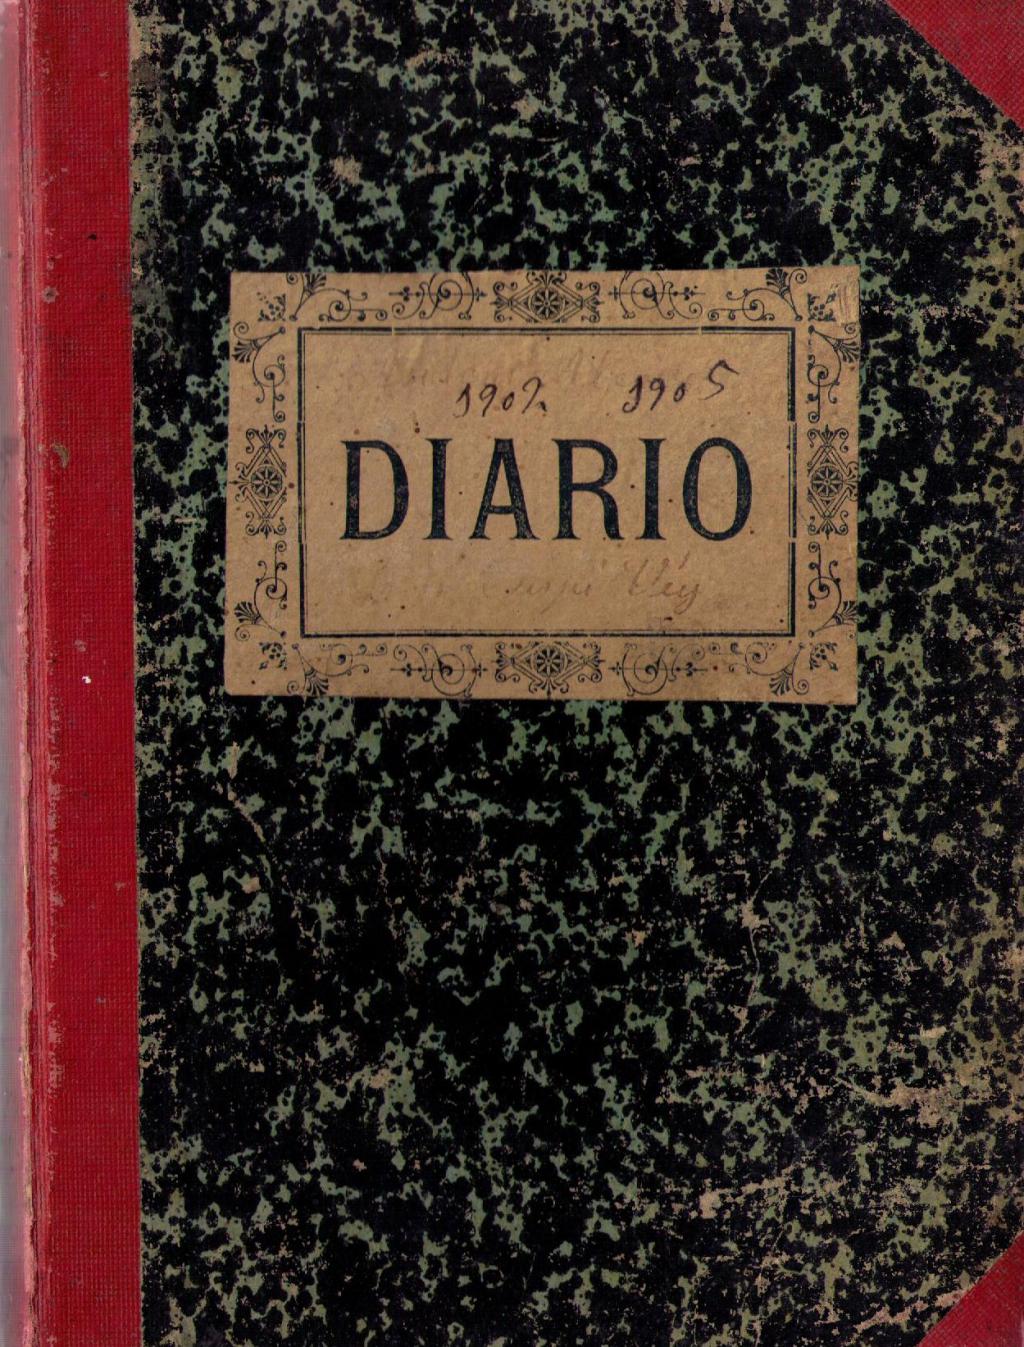 Coberta de Diario 1902-1942 (Comptes de Son Crespí)